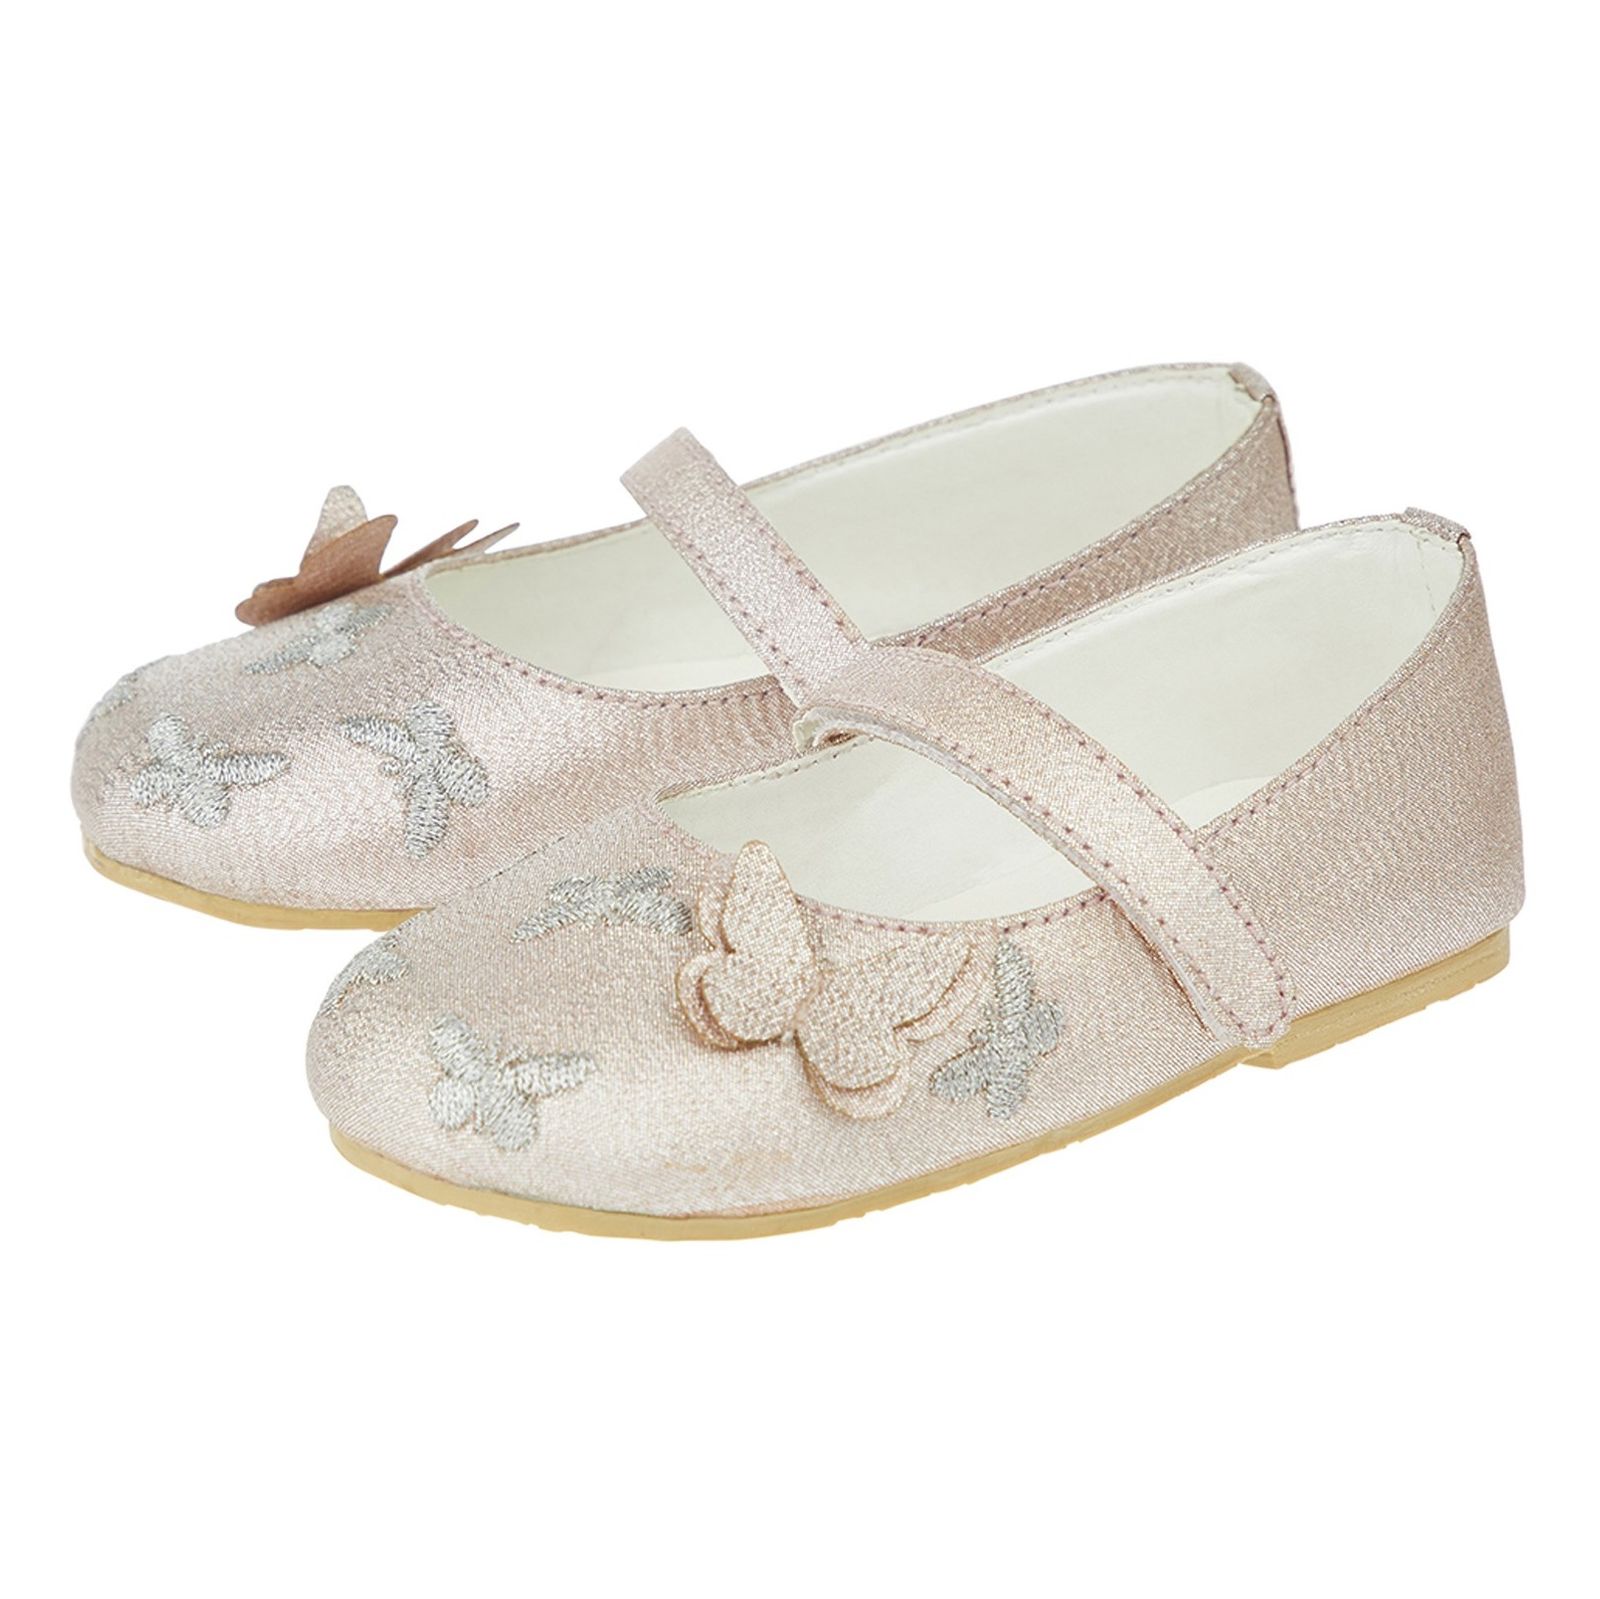 کفش چسبی نوزادی دخترانه - مانسون چیلدرن - رزگلد - 3